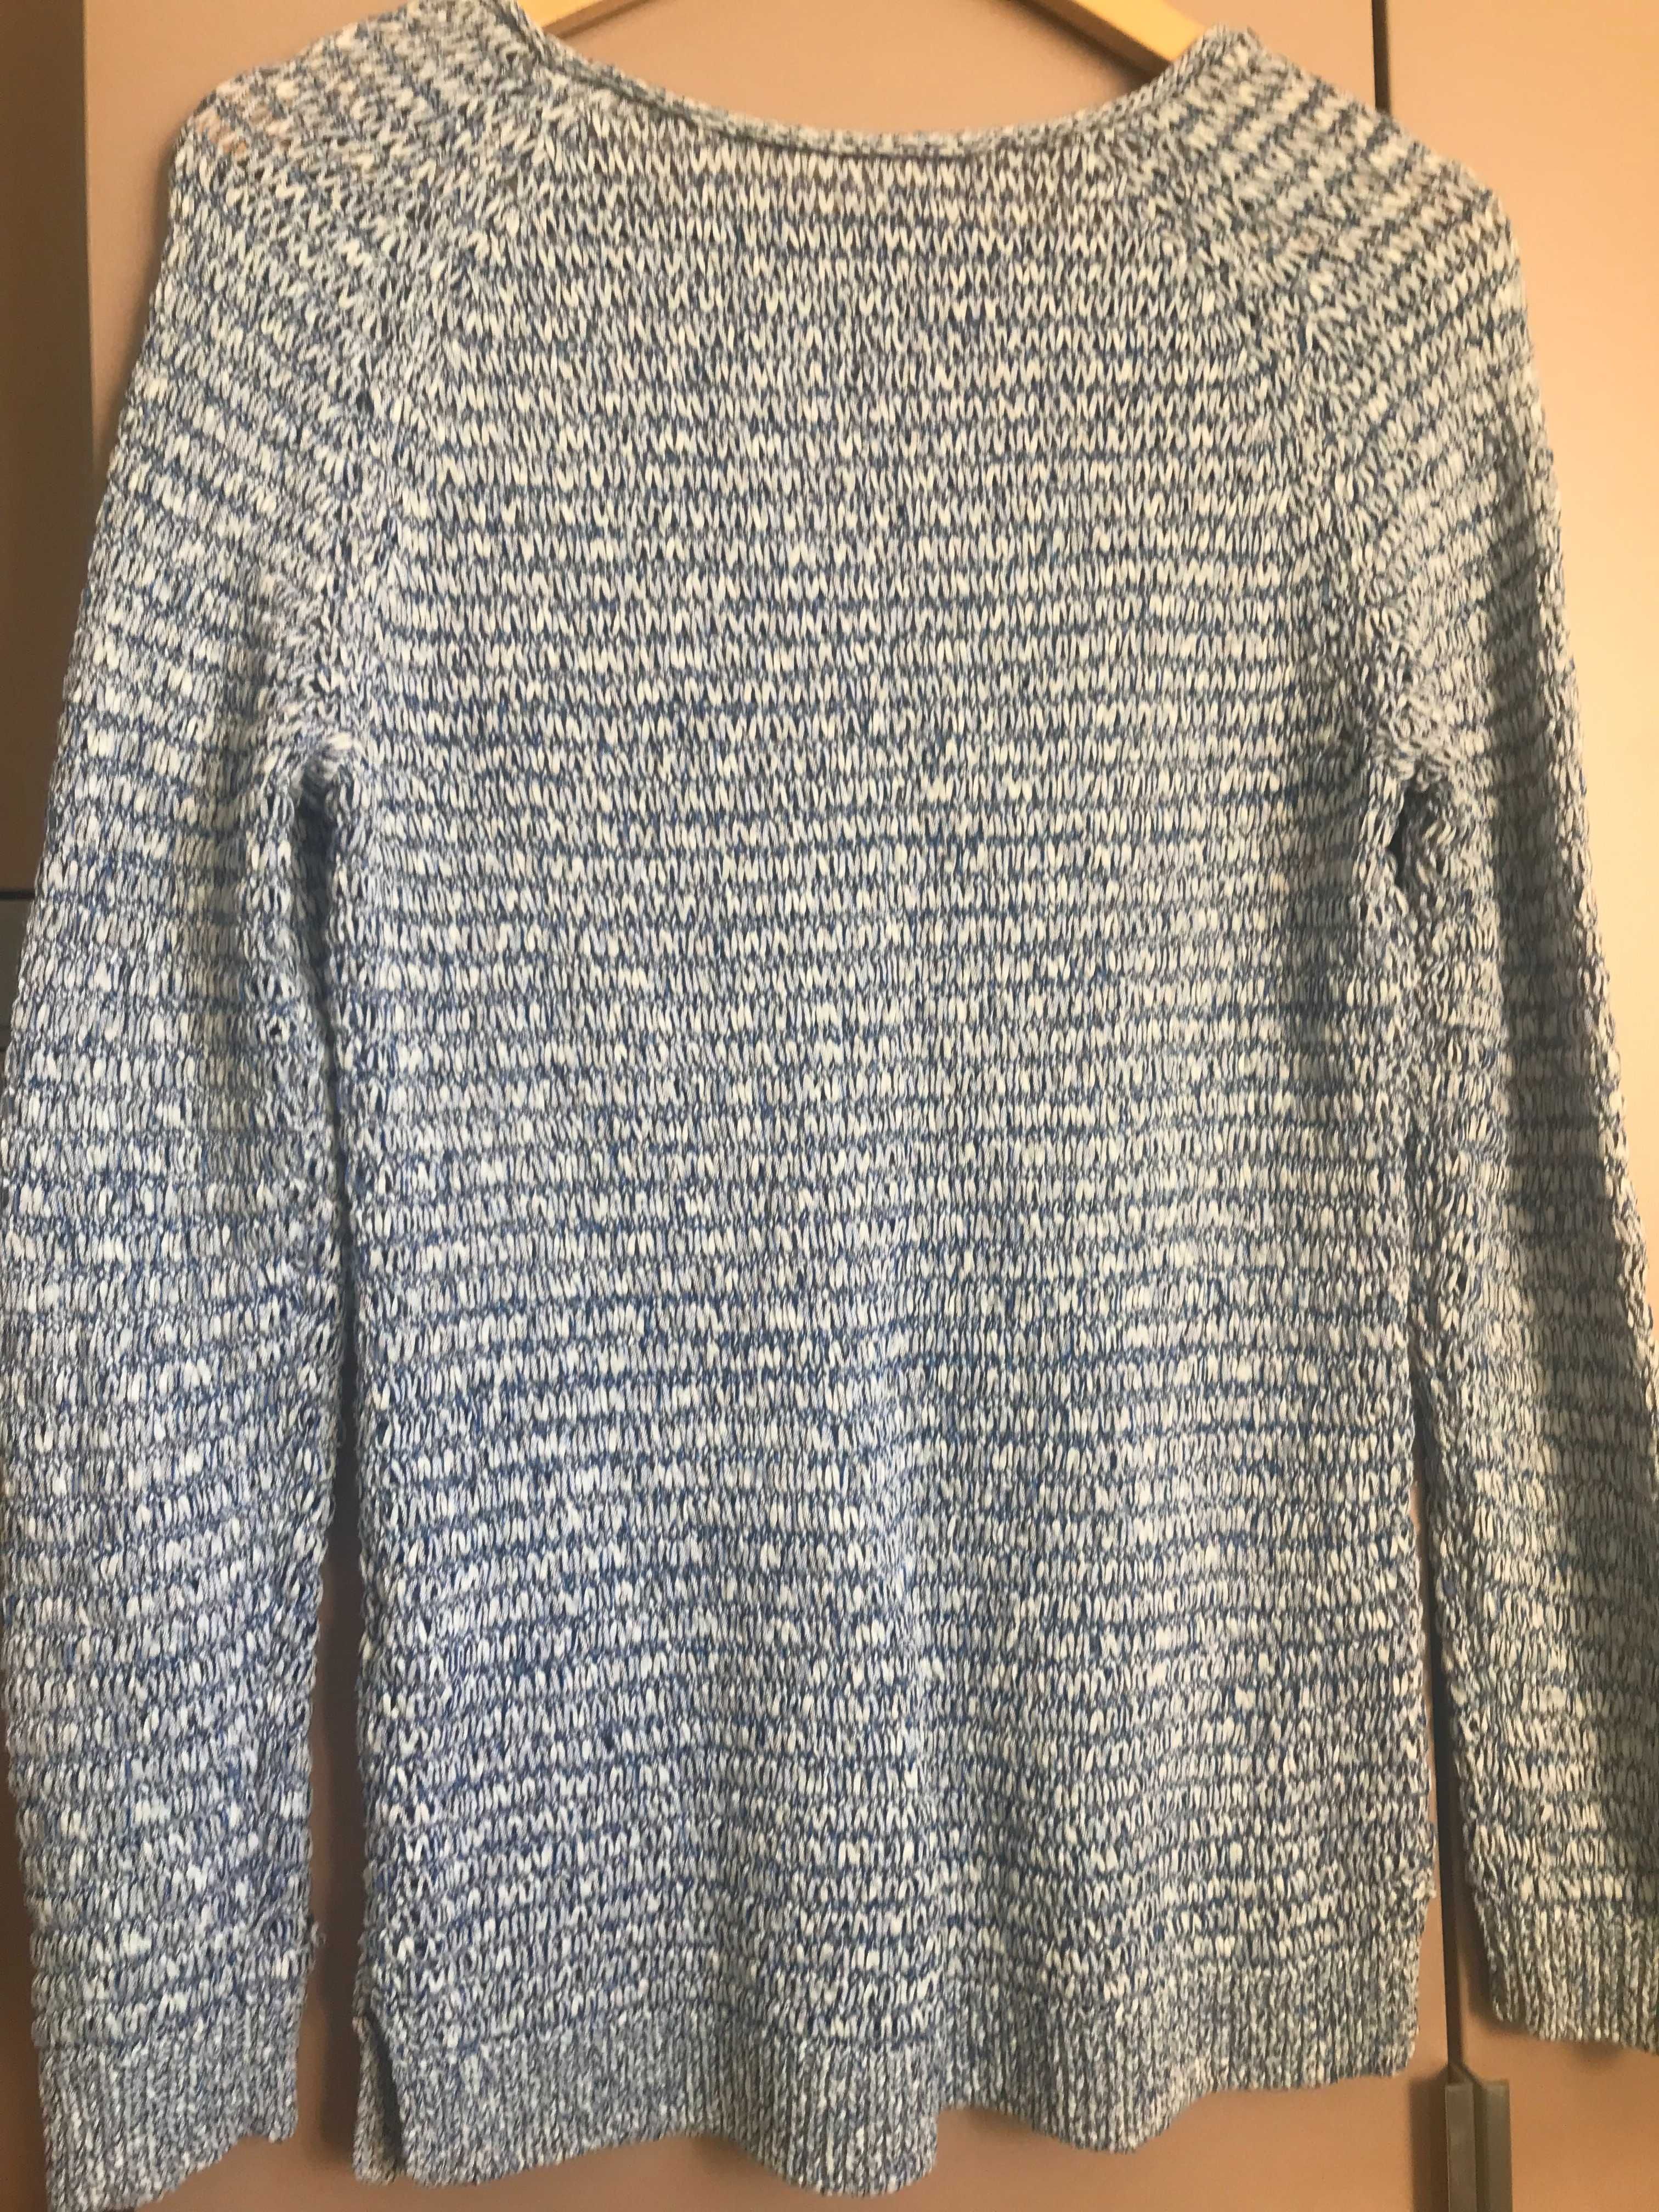 Biało-niebieski sweter TCM / Tschibo M